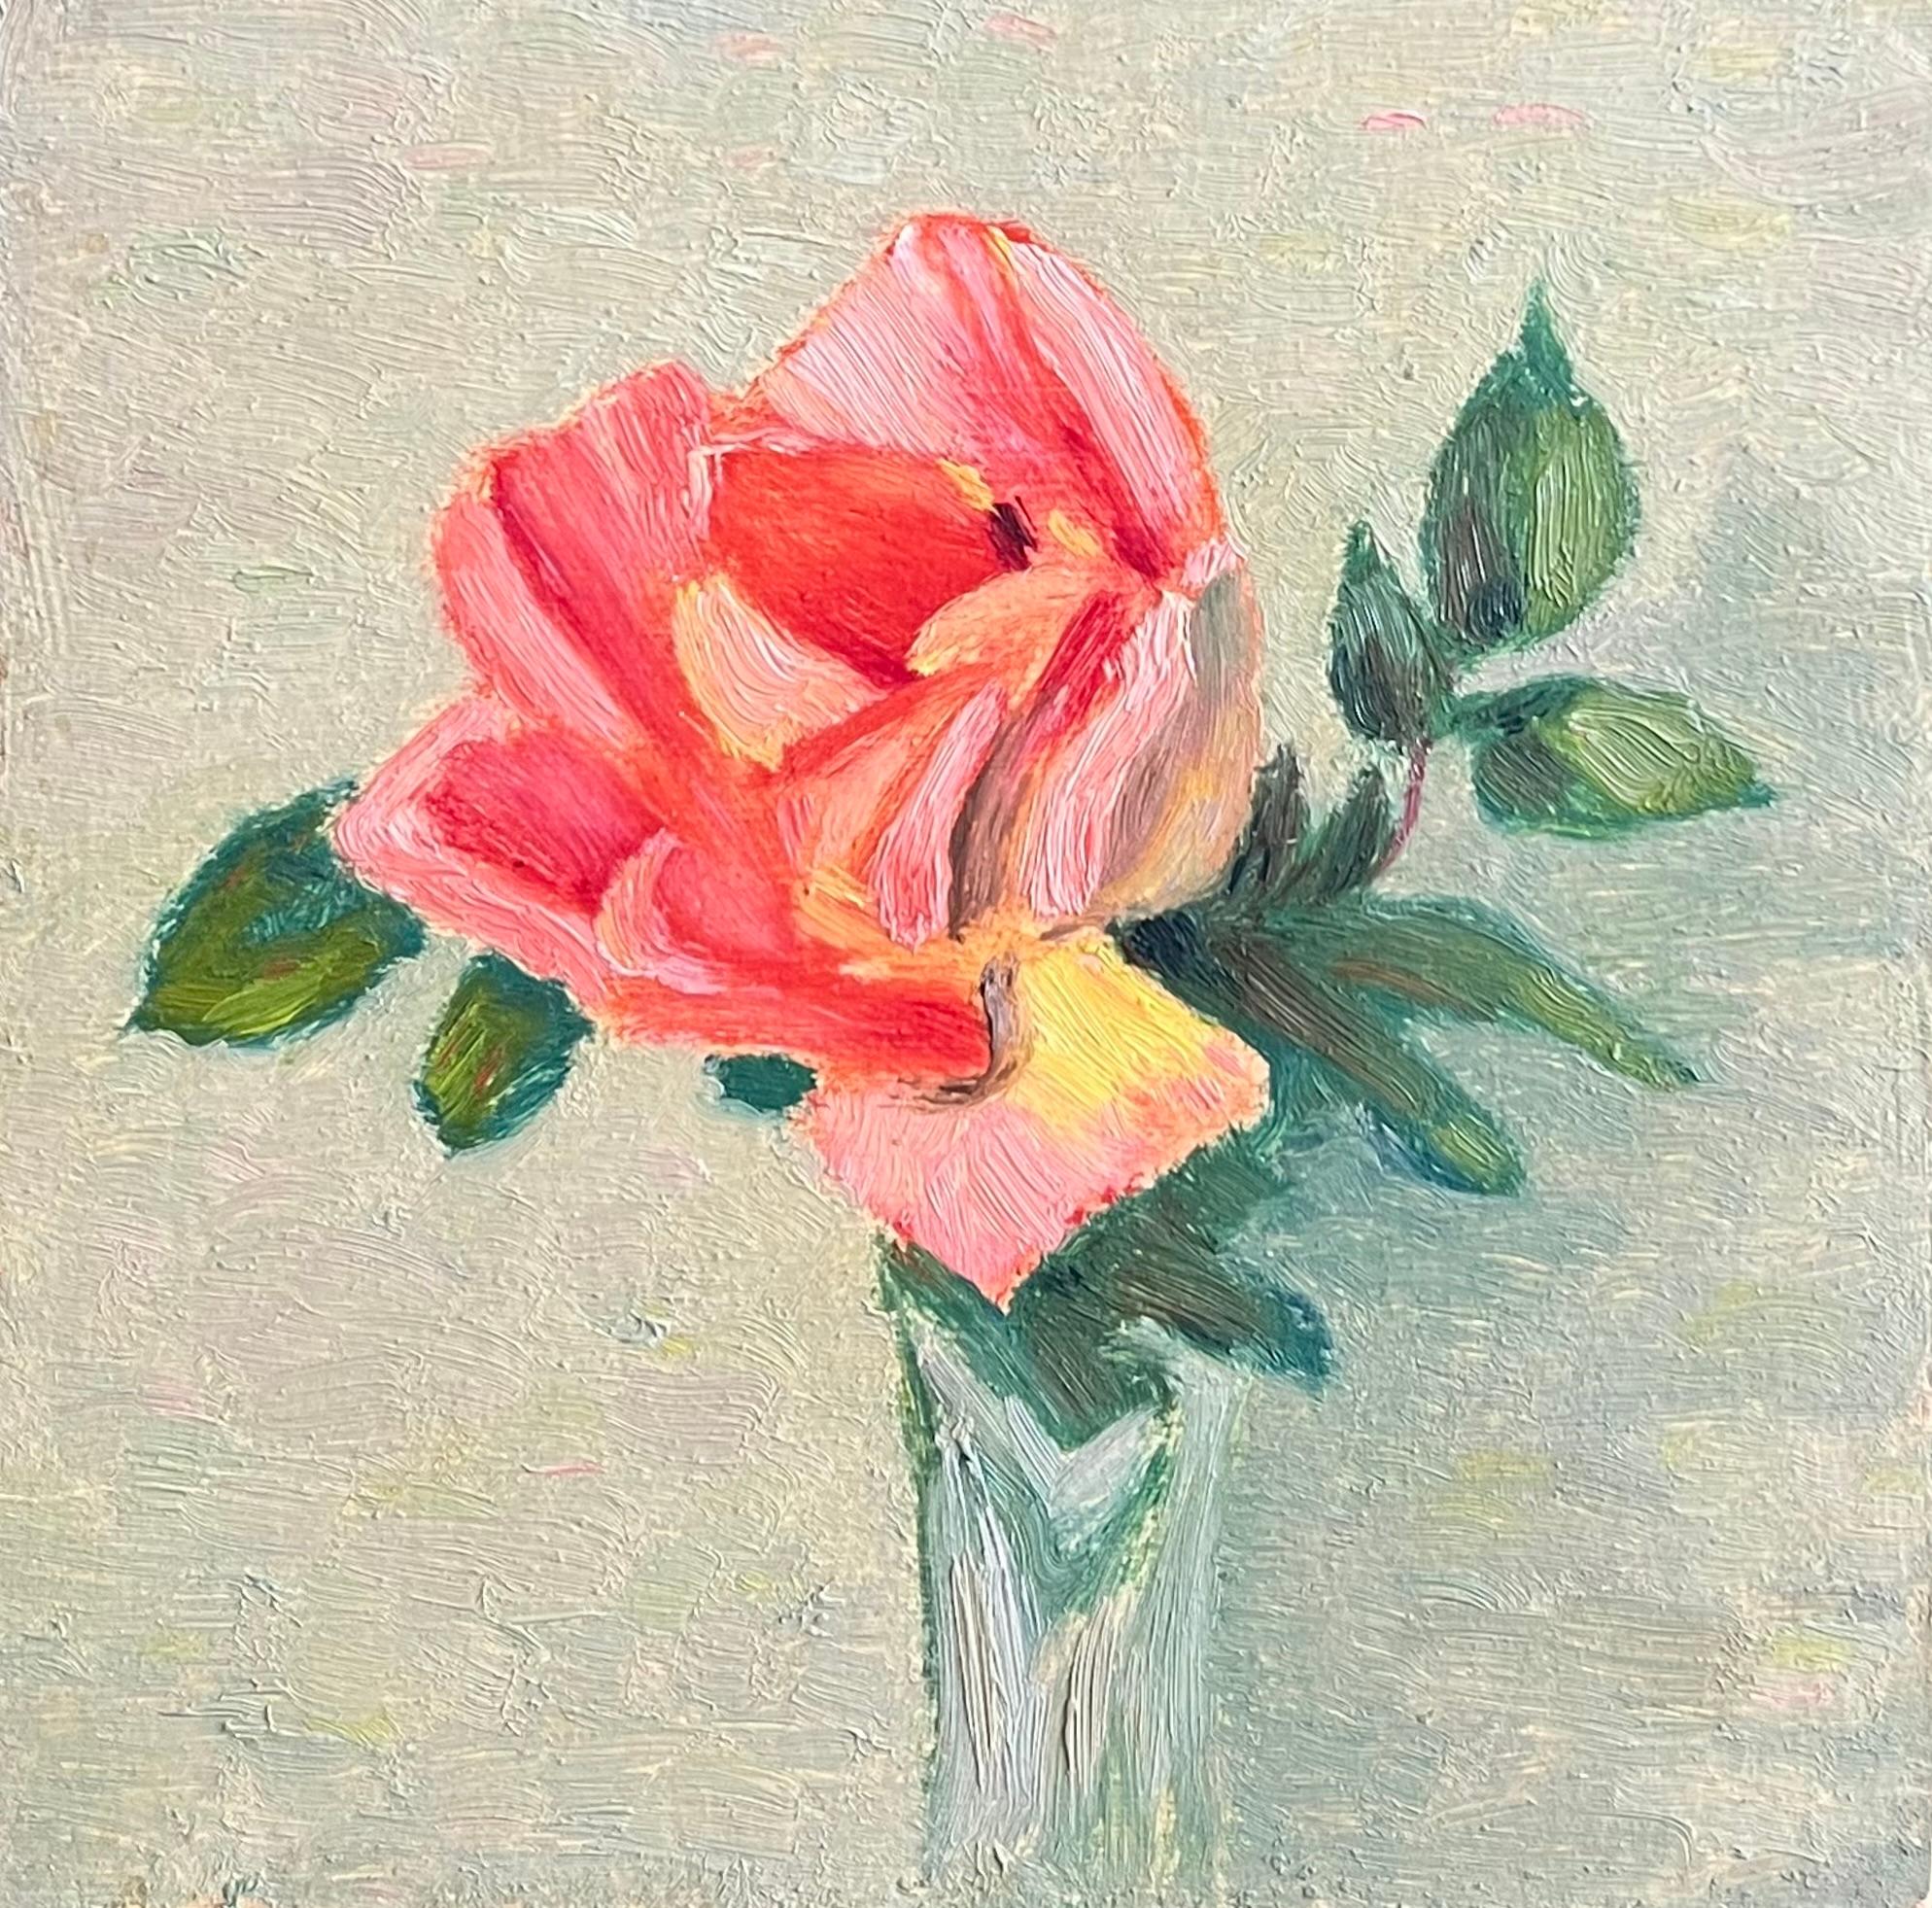 Rose in Blumenvase öl ptg Rot, Rosa & Gelb - Santa Barbara, Kalifornien 0-202 – Painting von Francis Draper Jr.